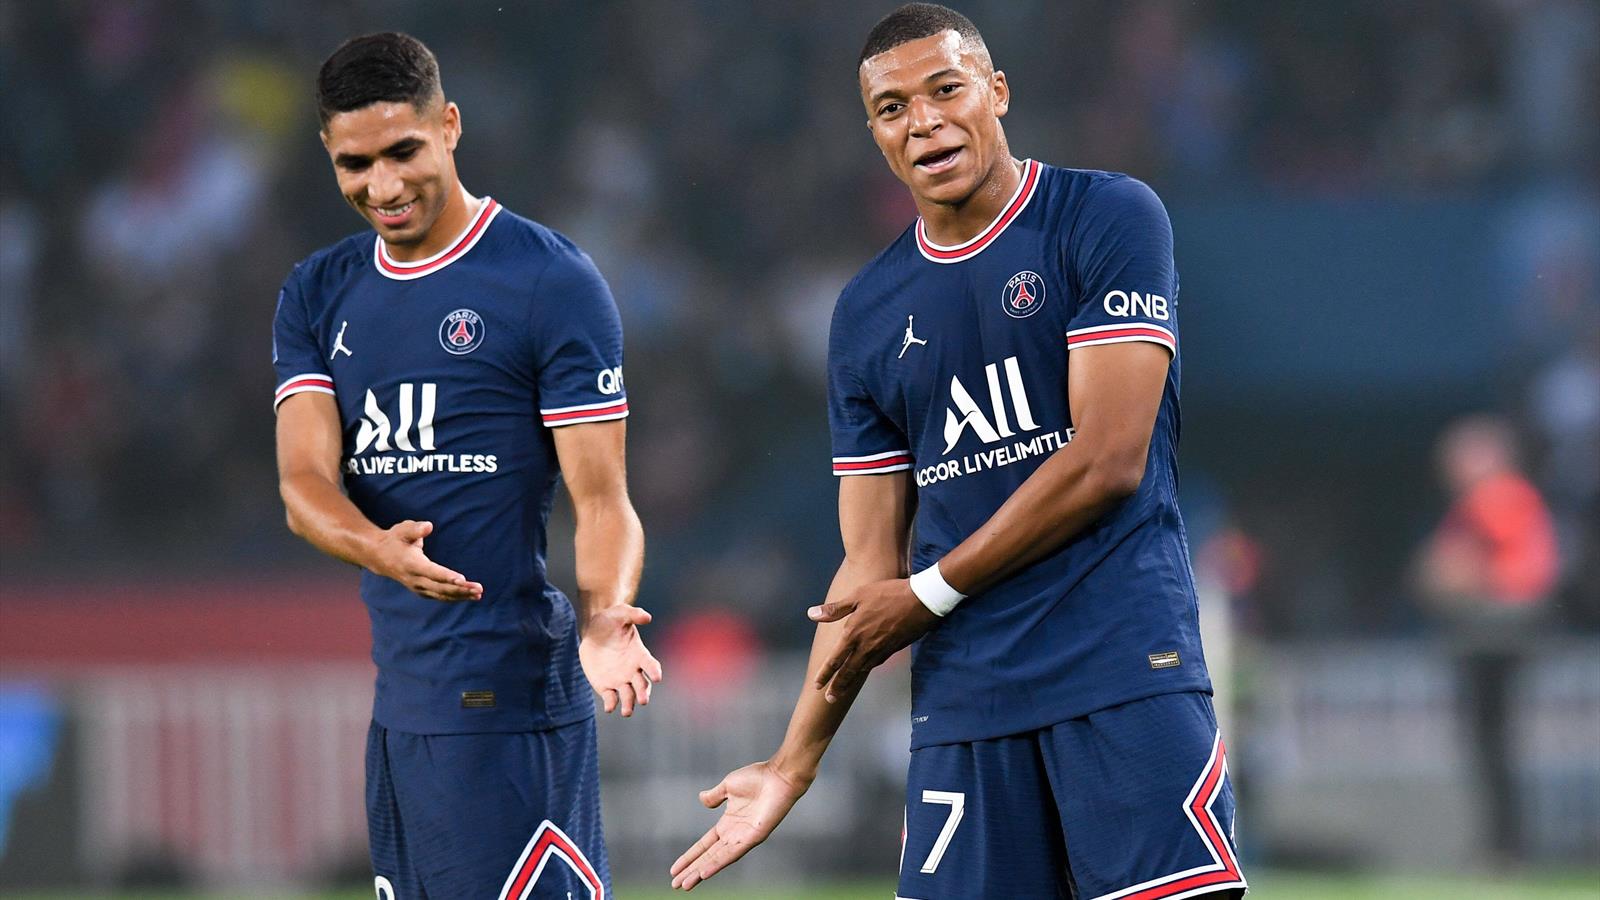 Tin tức Paris Saint-Germain: Hakimi cảm thấy đau khổ ở câu lạc bộ